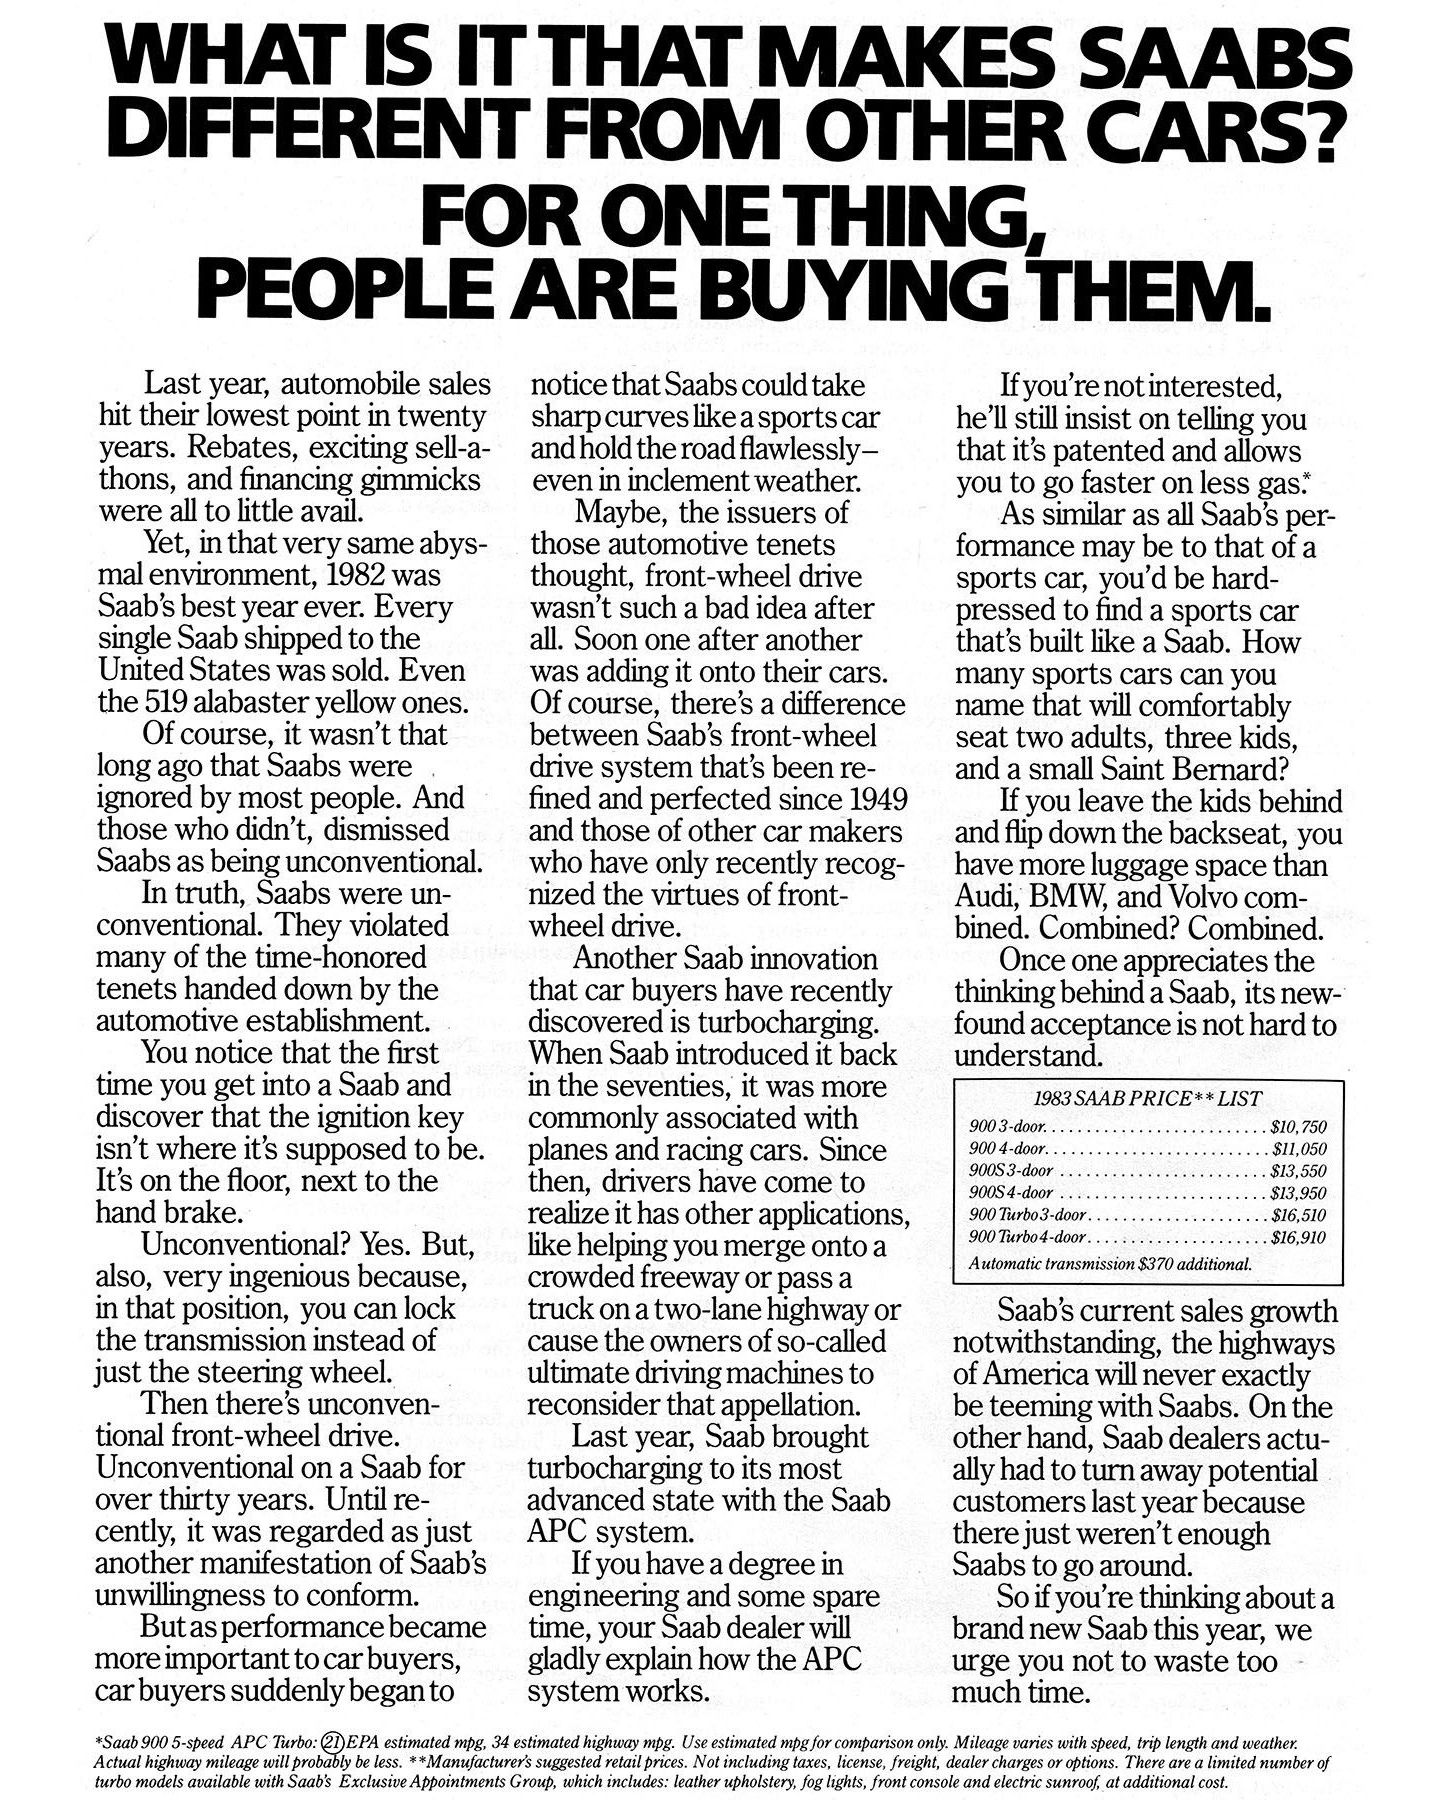 1983 saab 900 magazine advertisement